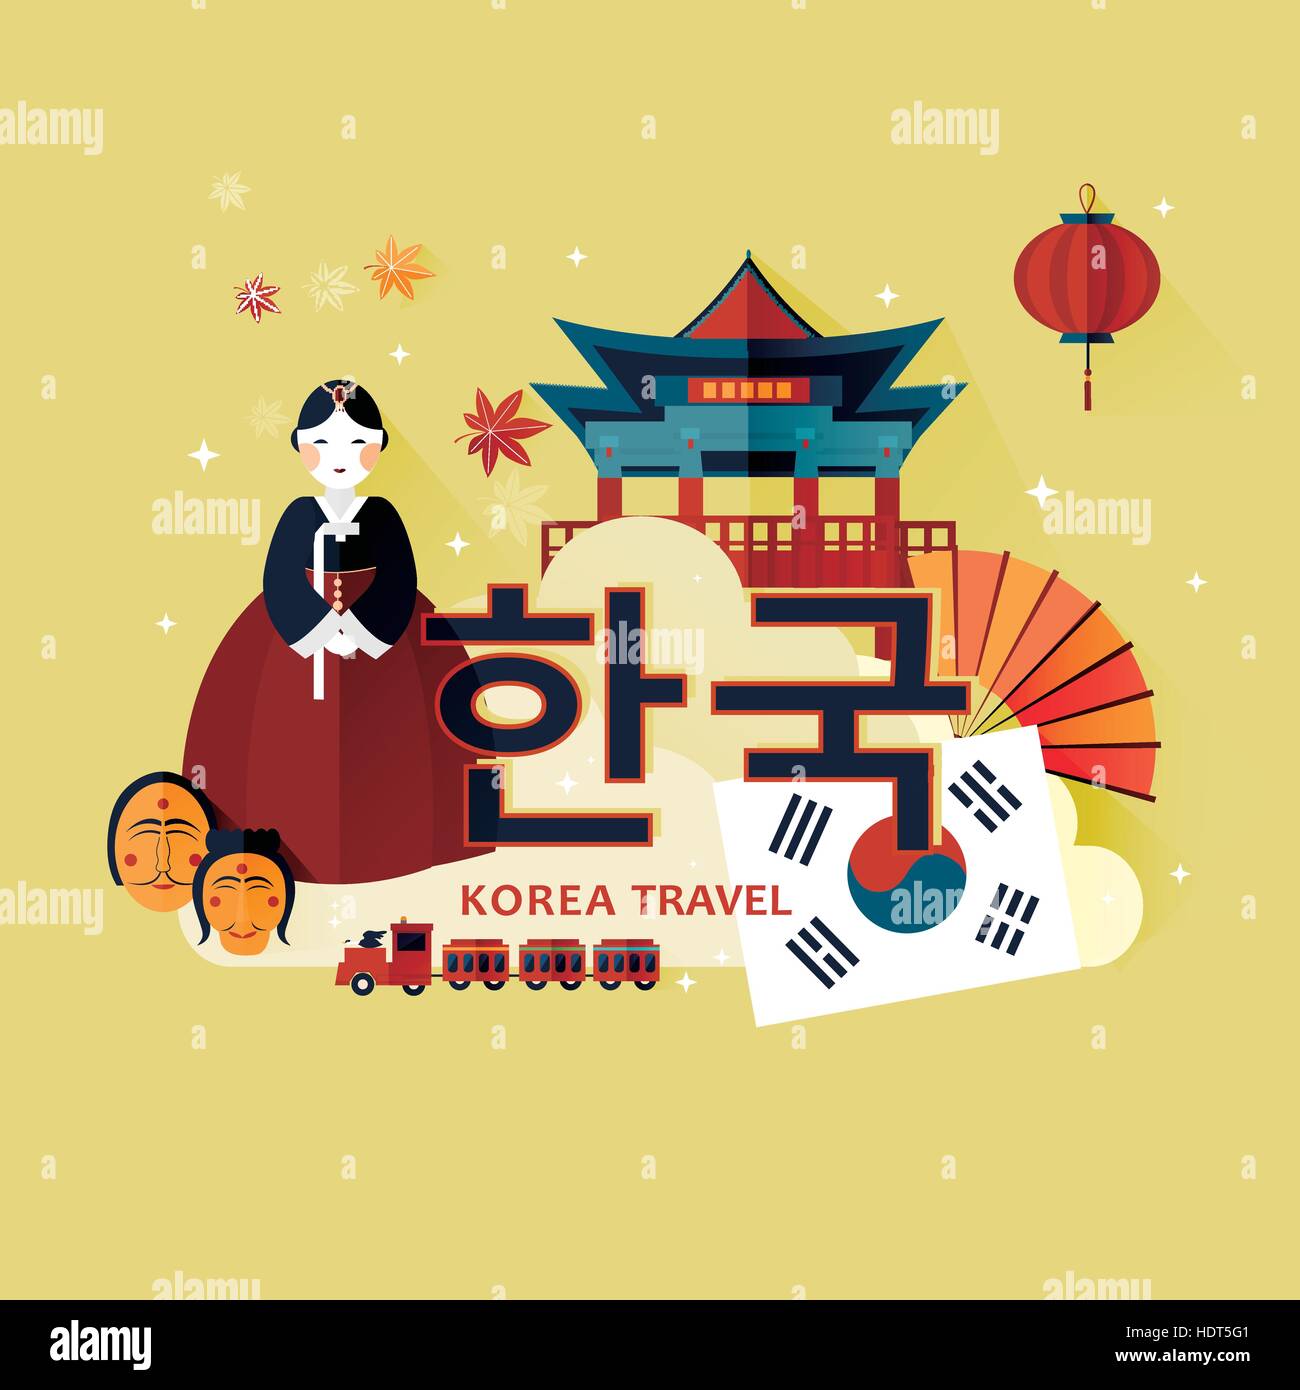 Tradizionale cultura coreana simbolo nel poster di viaggio -Corea in coreano parole nel mezzo Illustrazione Vettoriale